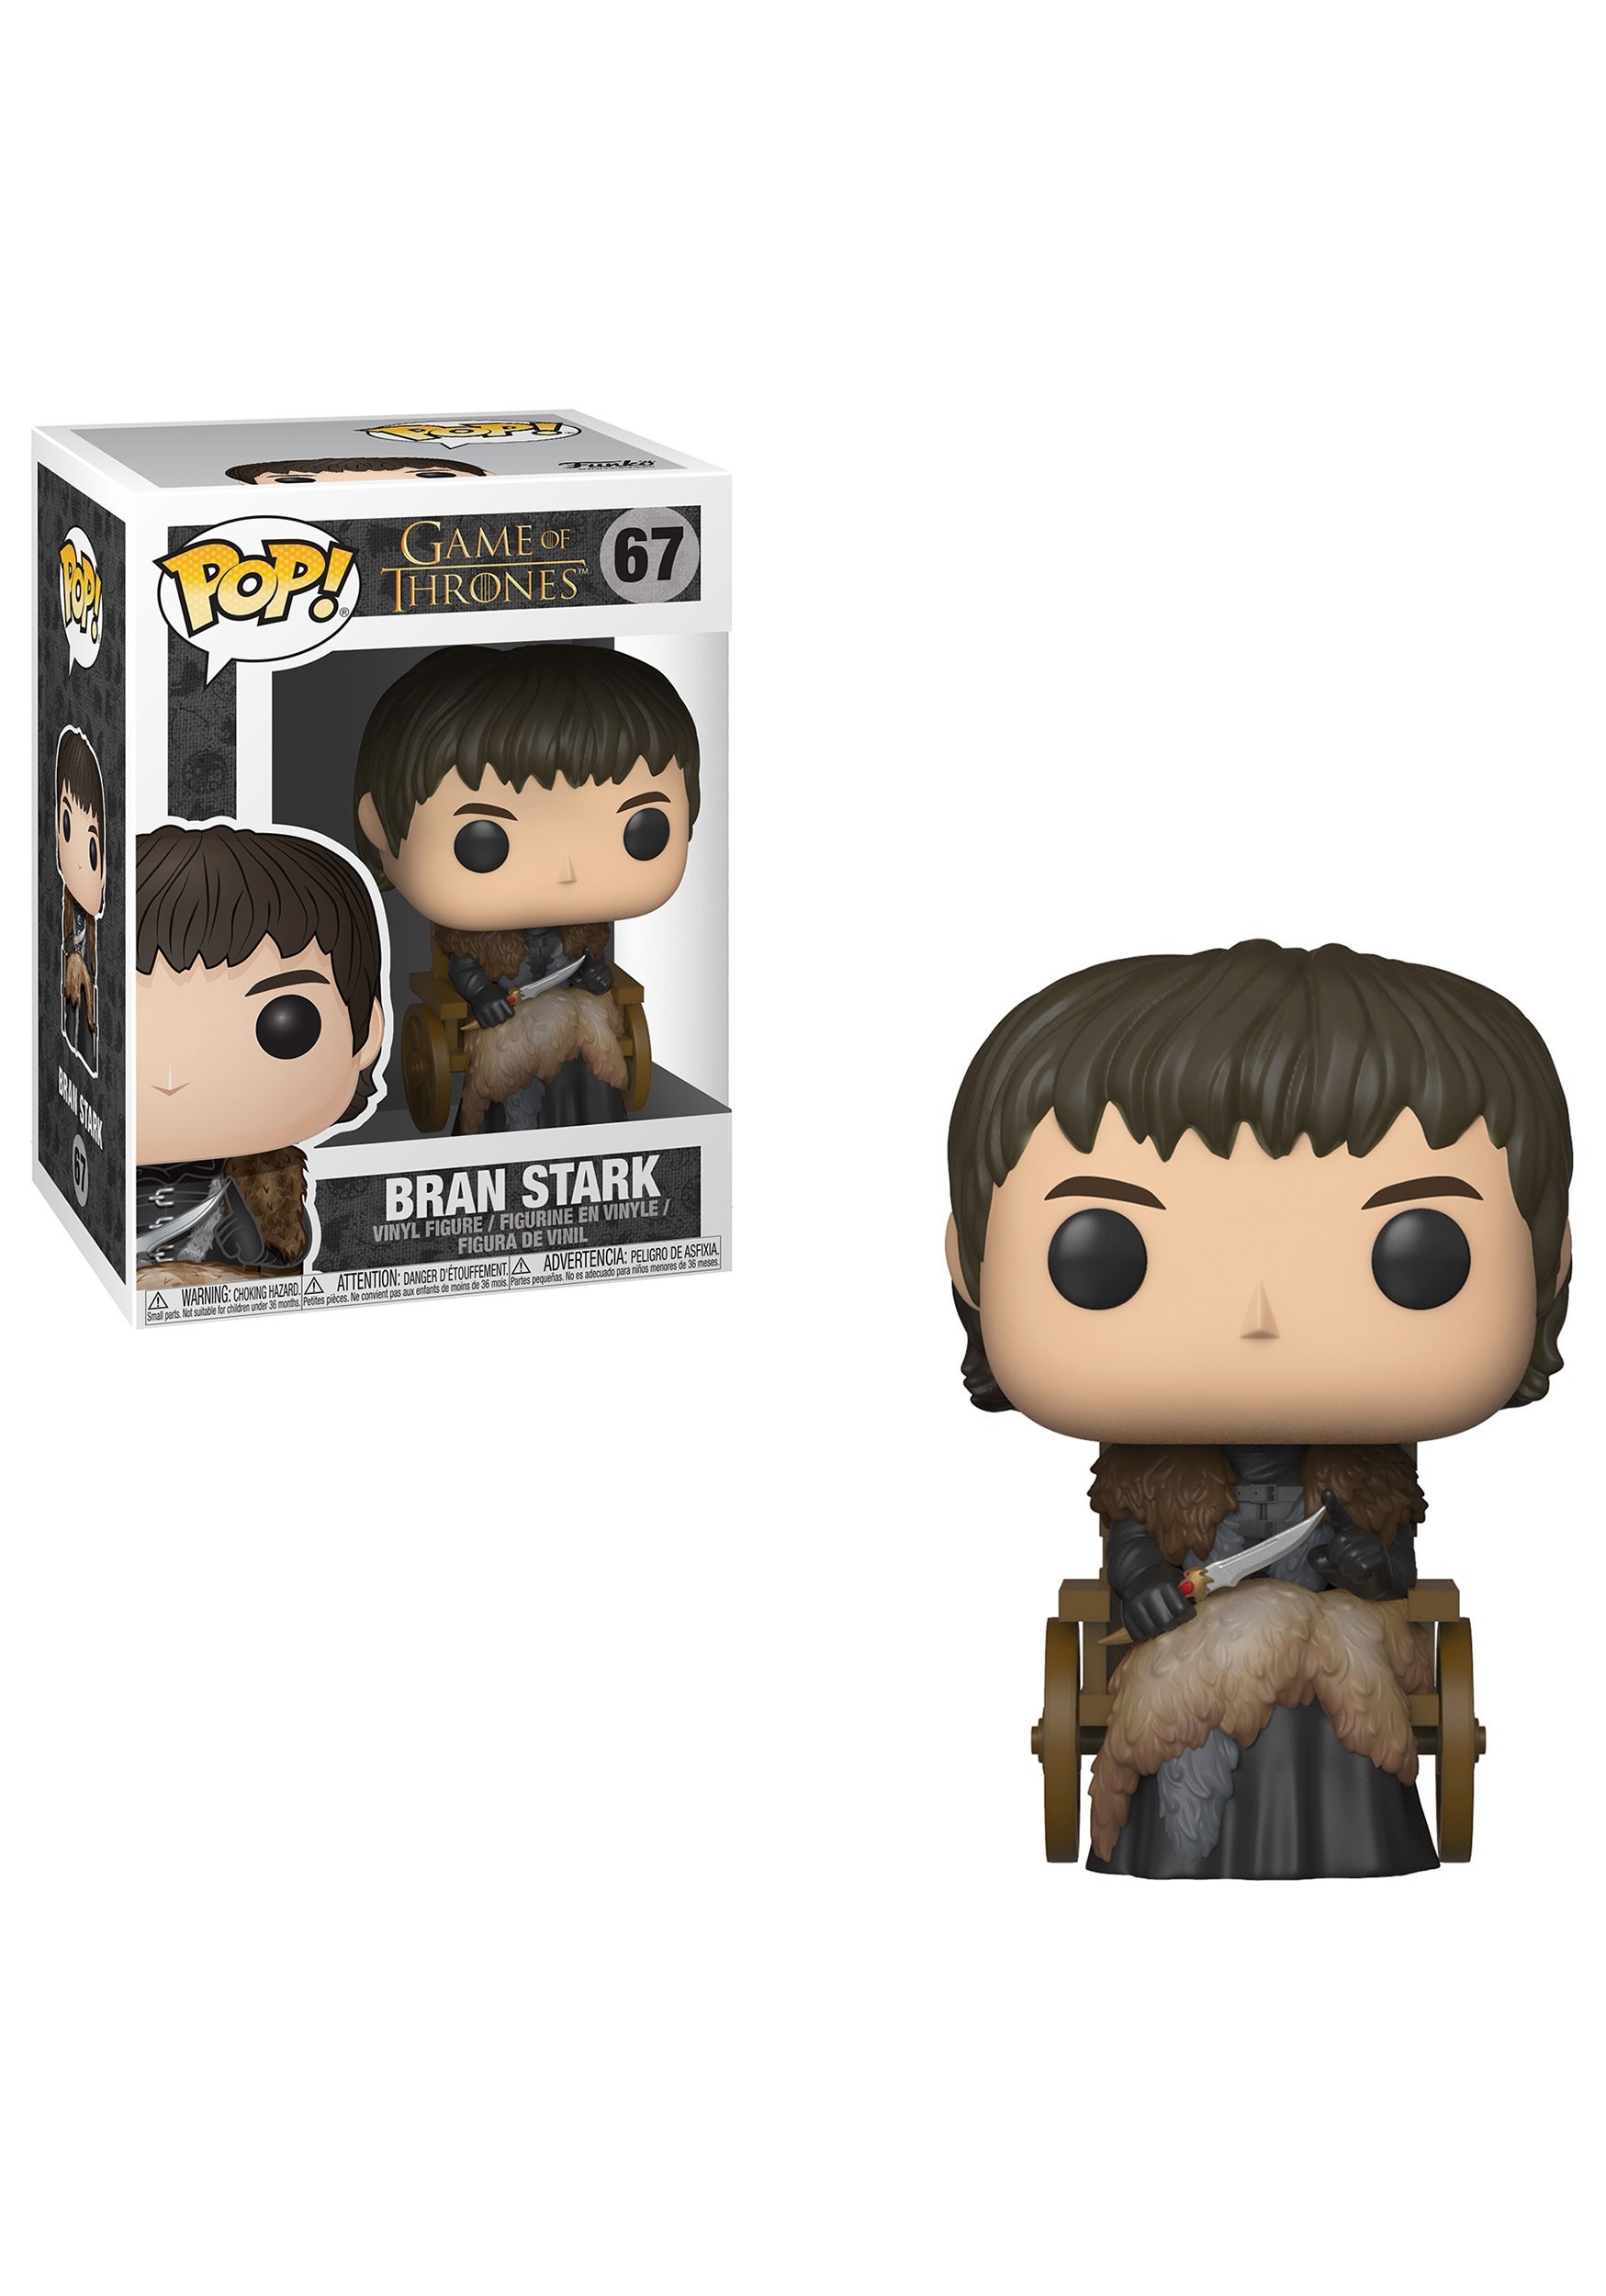 Pop! TV: Bran Stark- Game of Thrones